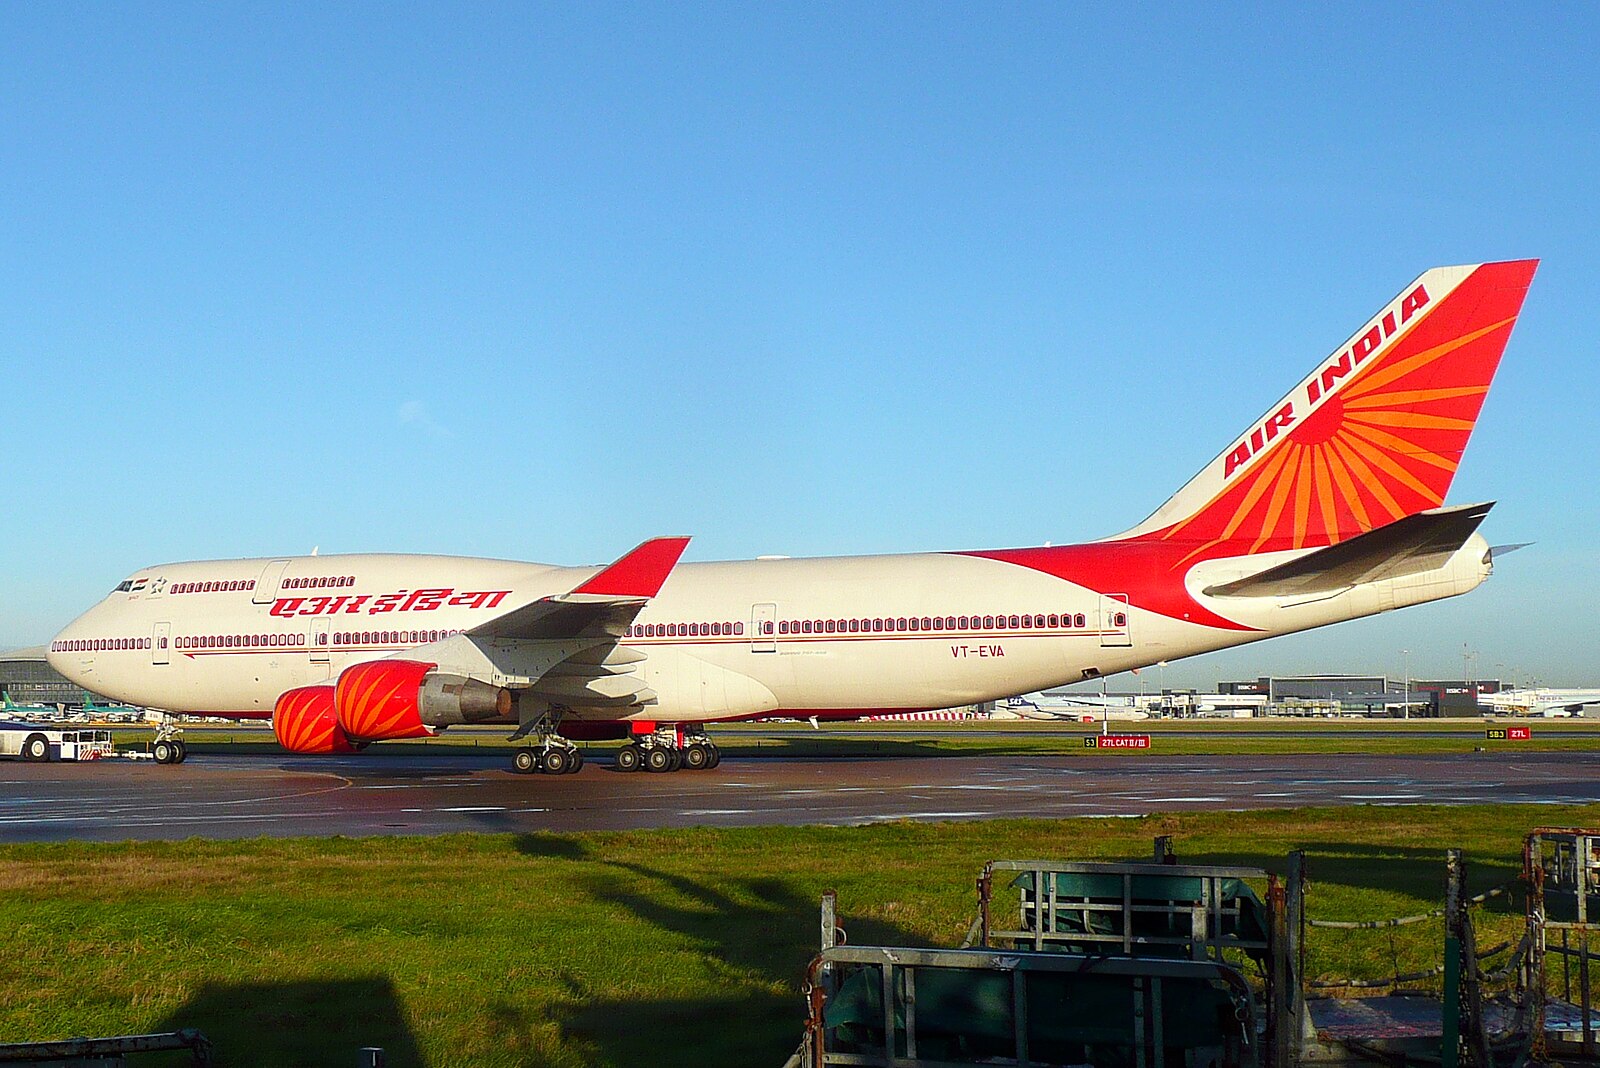 747-400 mais antigo da frota da Air India realiza seu último voo